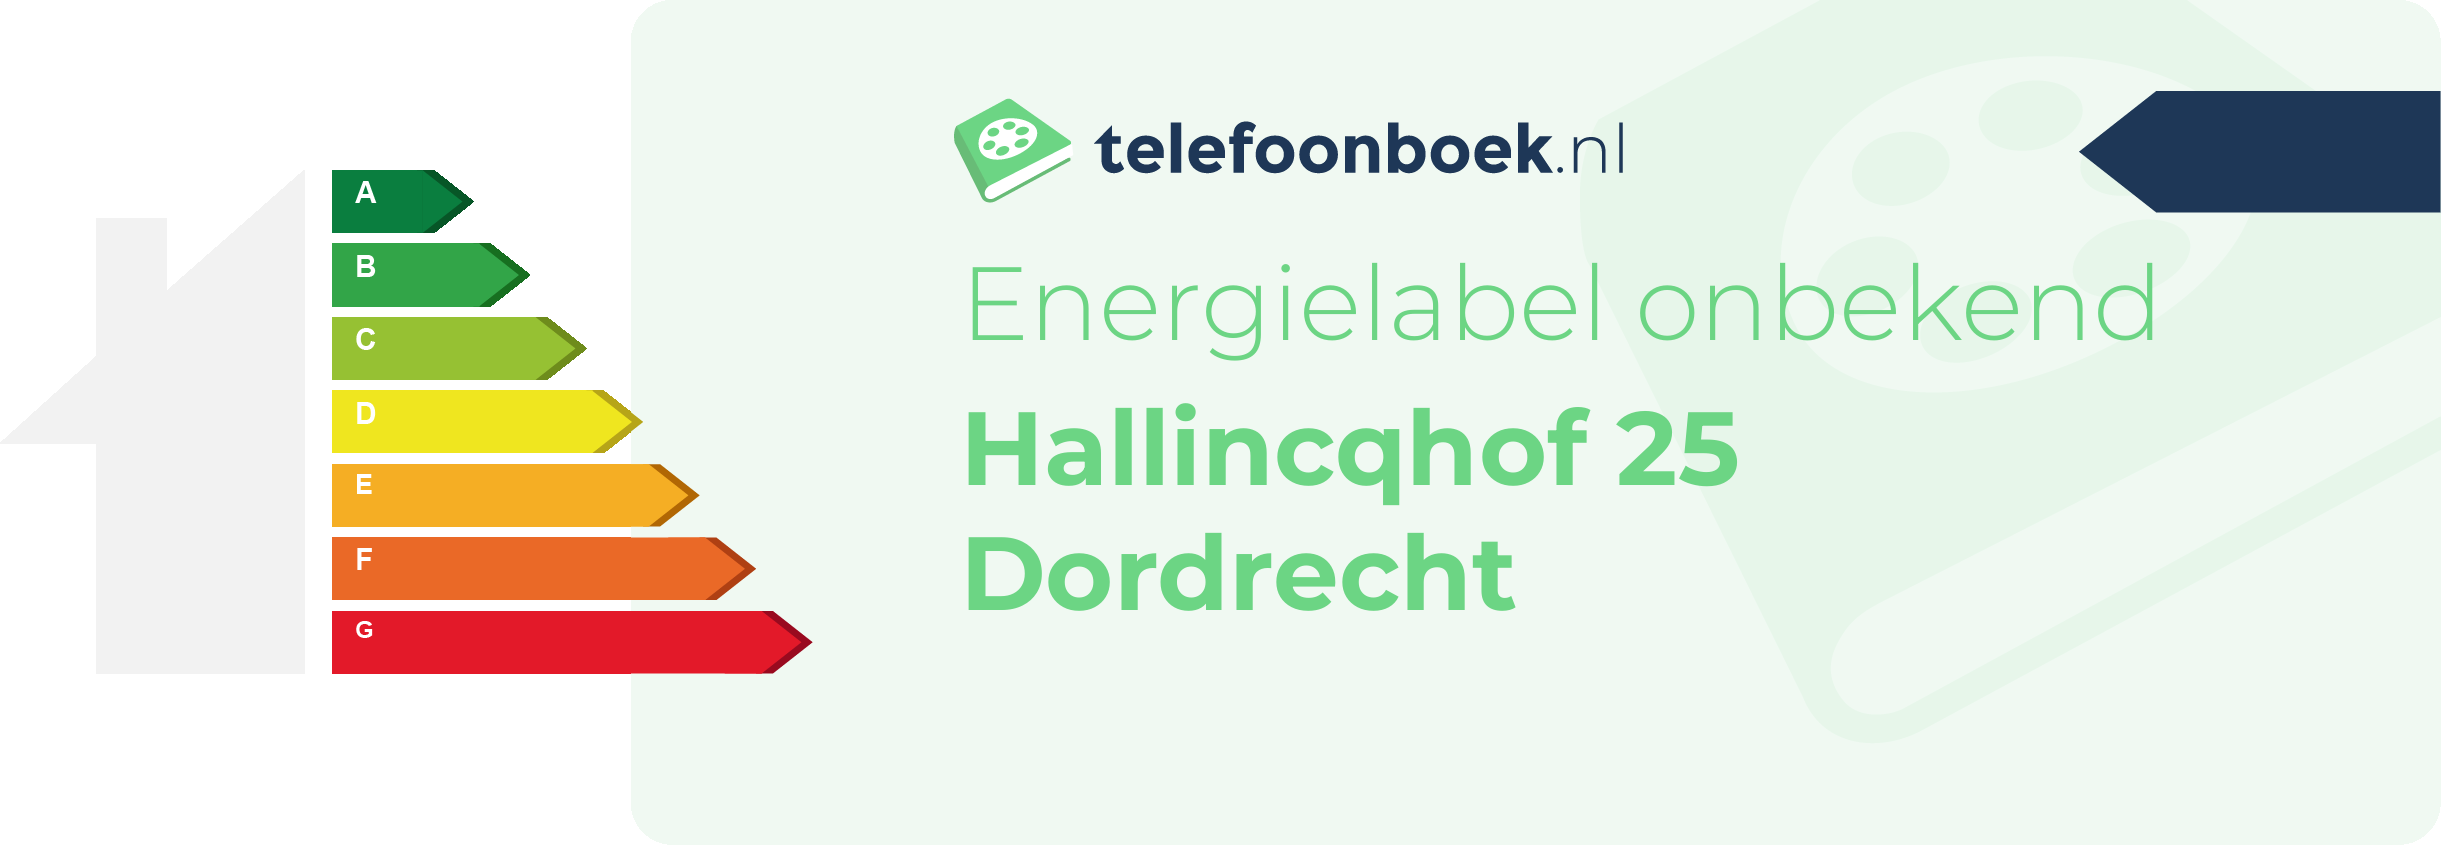 Energielabel Hallincqhof 25 Dordrecht